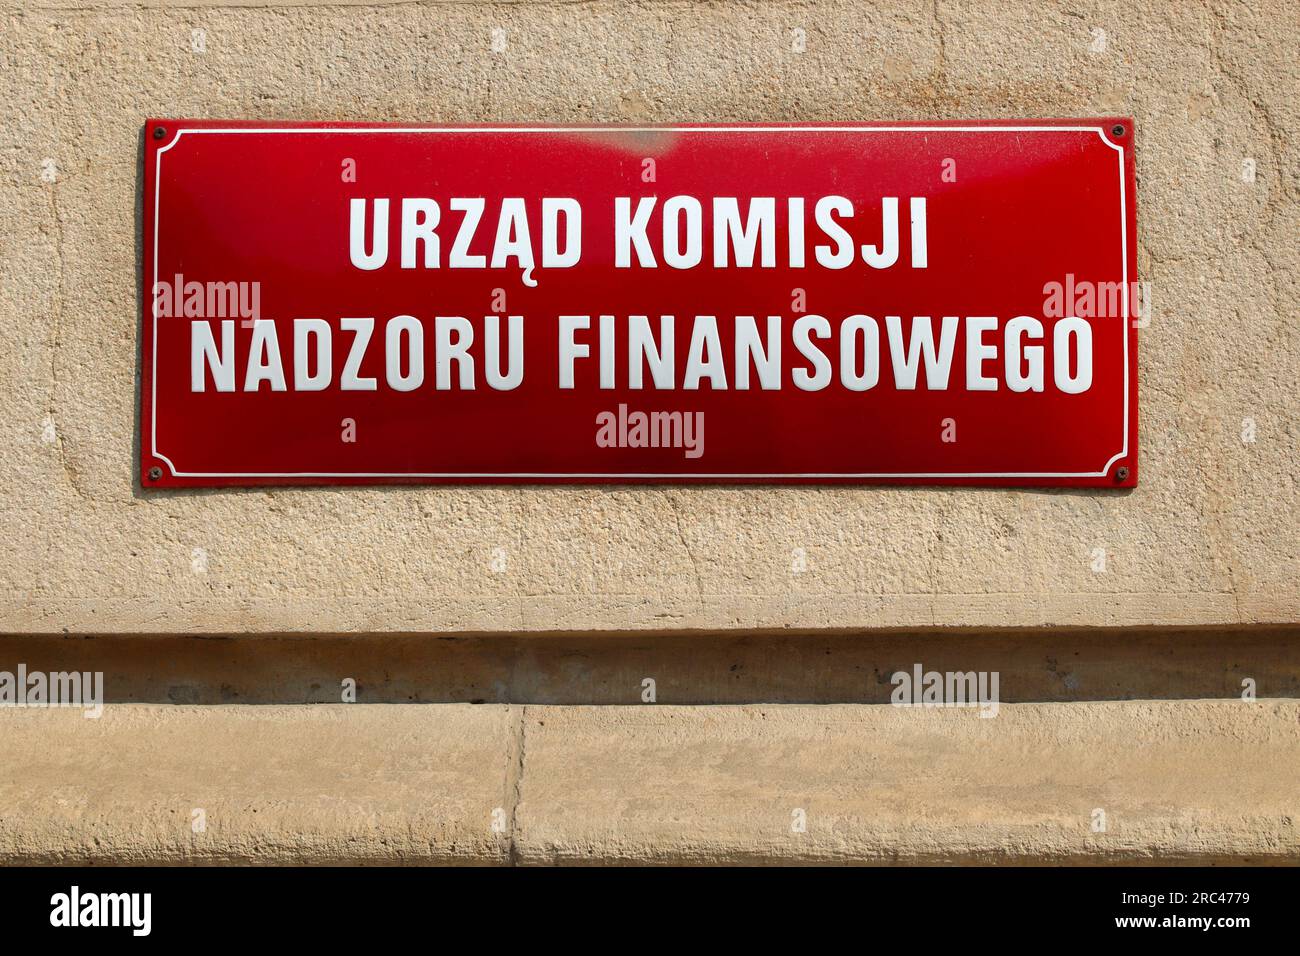 Krakau, Polen - 28. AUGUST 2018: urzad Komisji Nadzoru Finansowego (Finanzaufsicht) in Krakau. Stockfoto